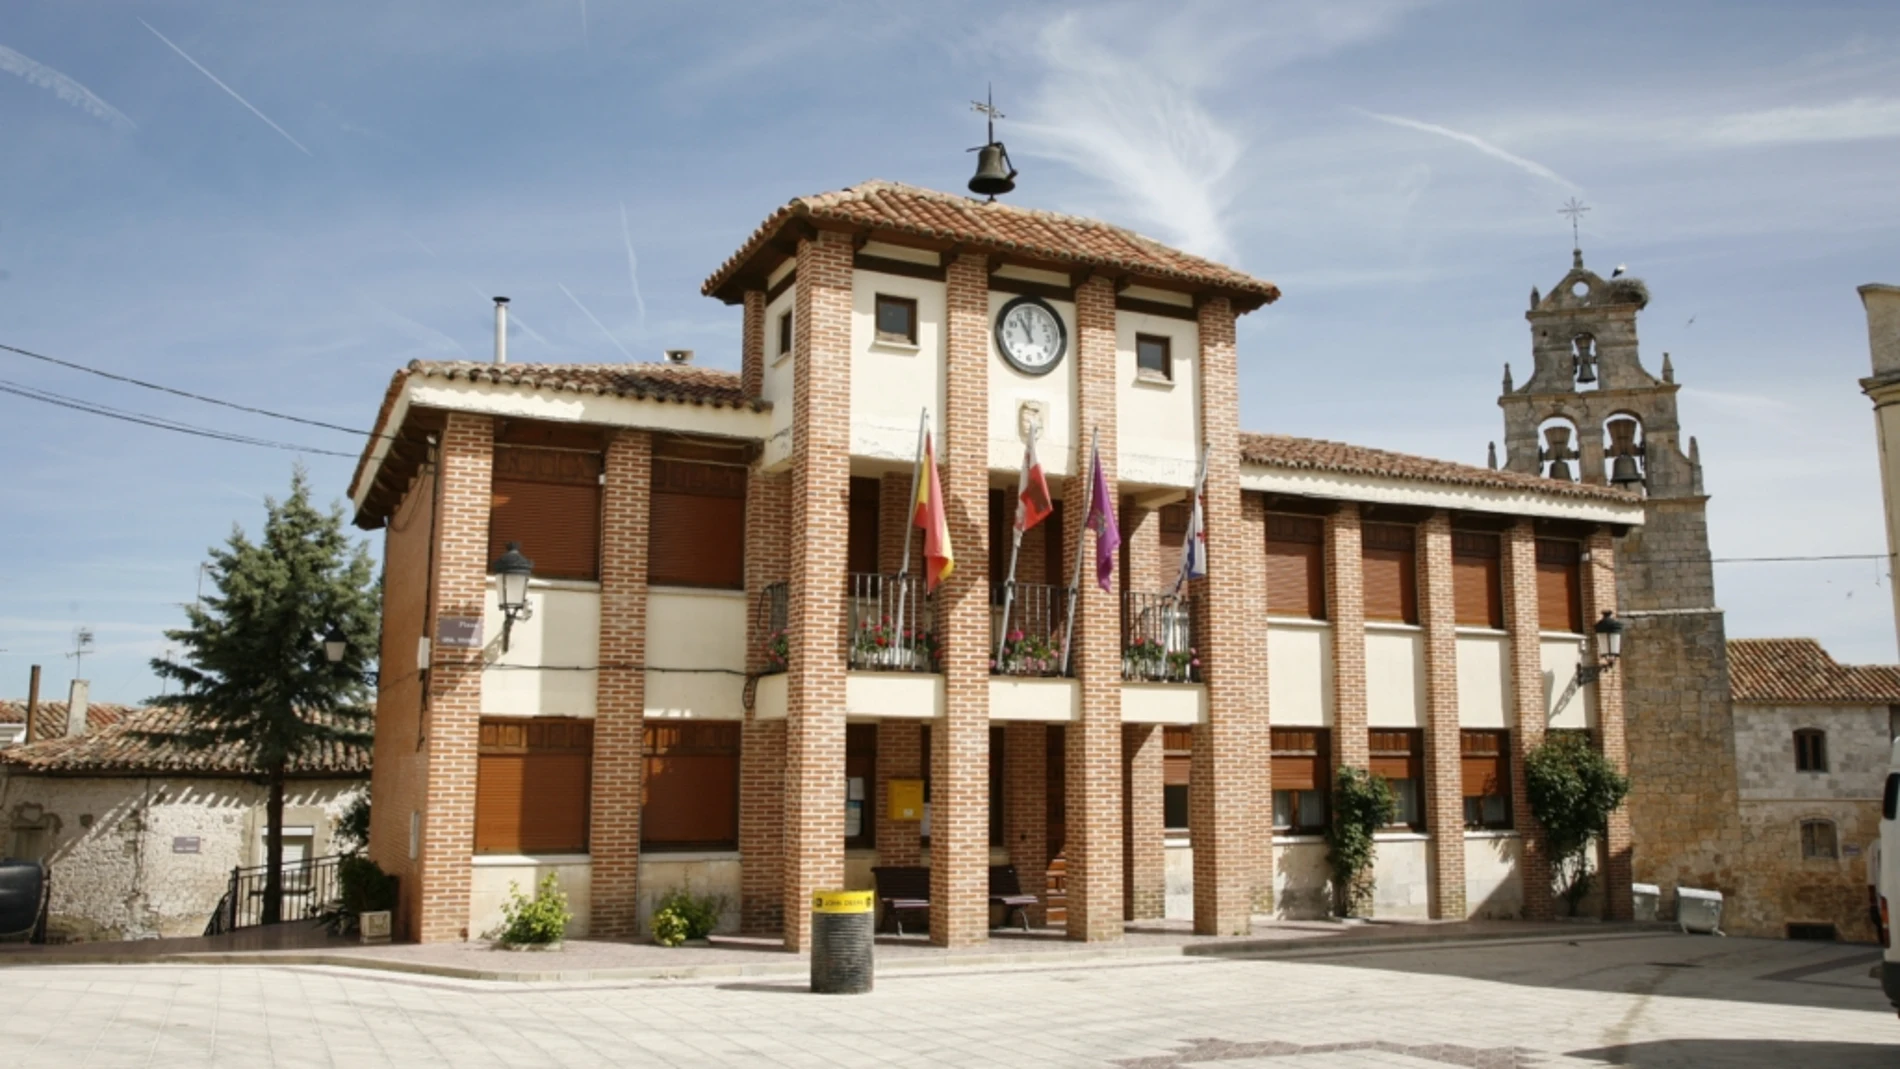 La localidad de Espinosa de Cerrato en Palencia, con paro cero